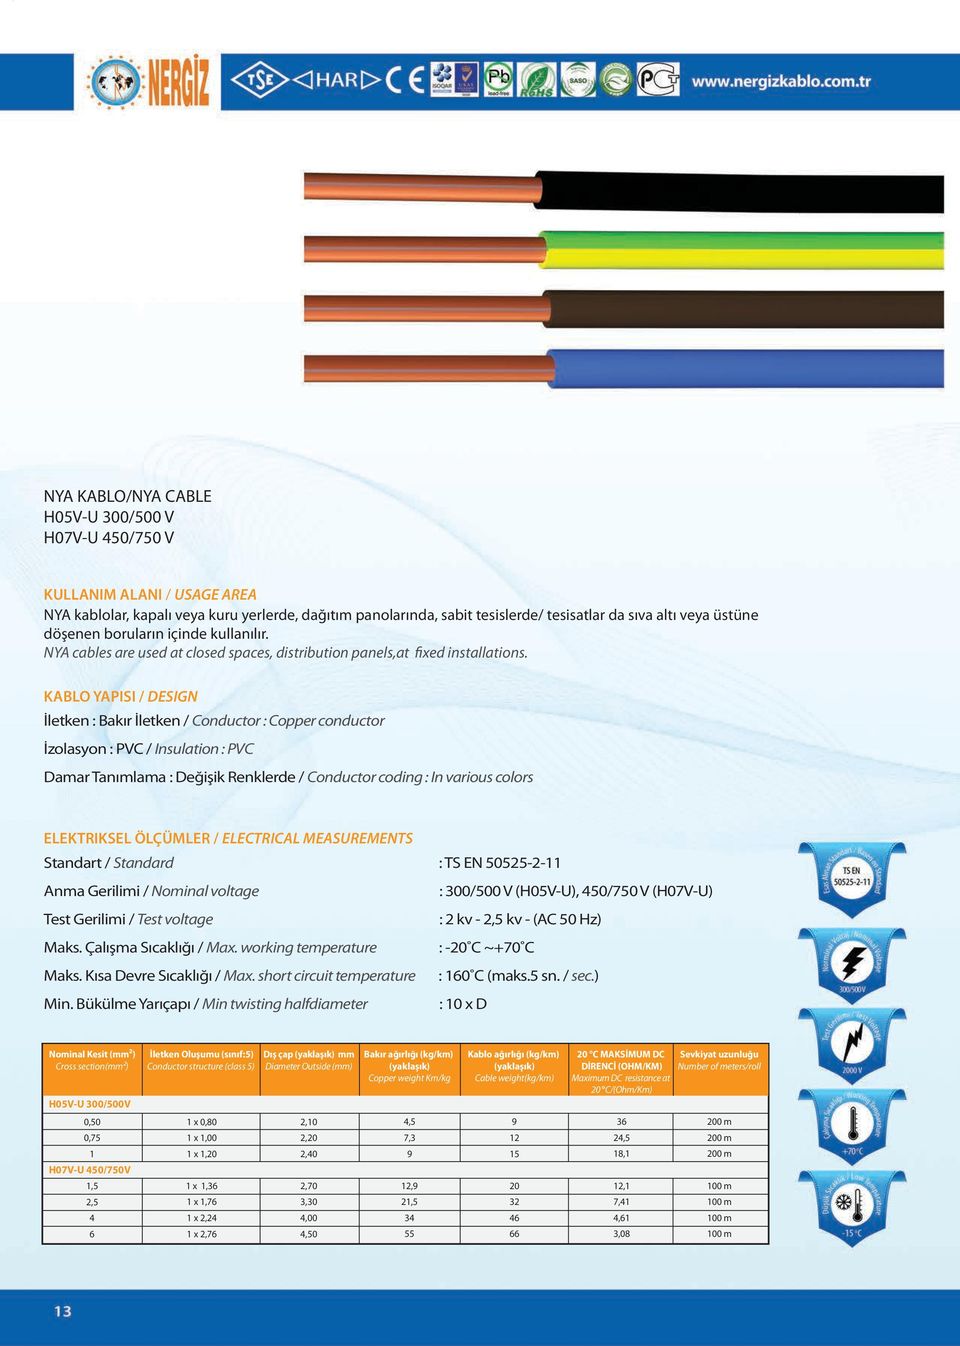 KABLO YAPISI / DESIGN İletken : Bakır İletken / Conductor : Copper conductor İzolasyon : PVC / Insulation : PVC Damar Tanımlama : Değişik Renklerde / Conductor coding : In various colors ELEKTRIKSEL